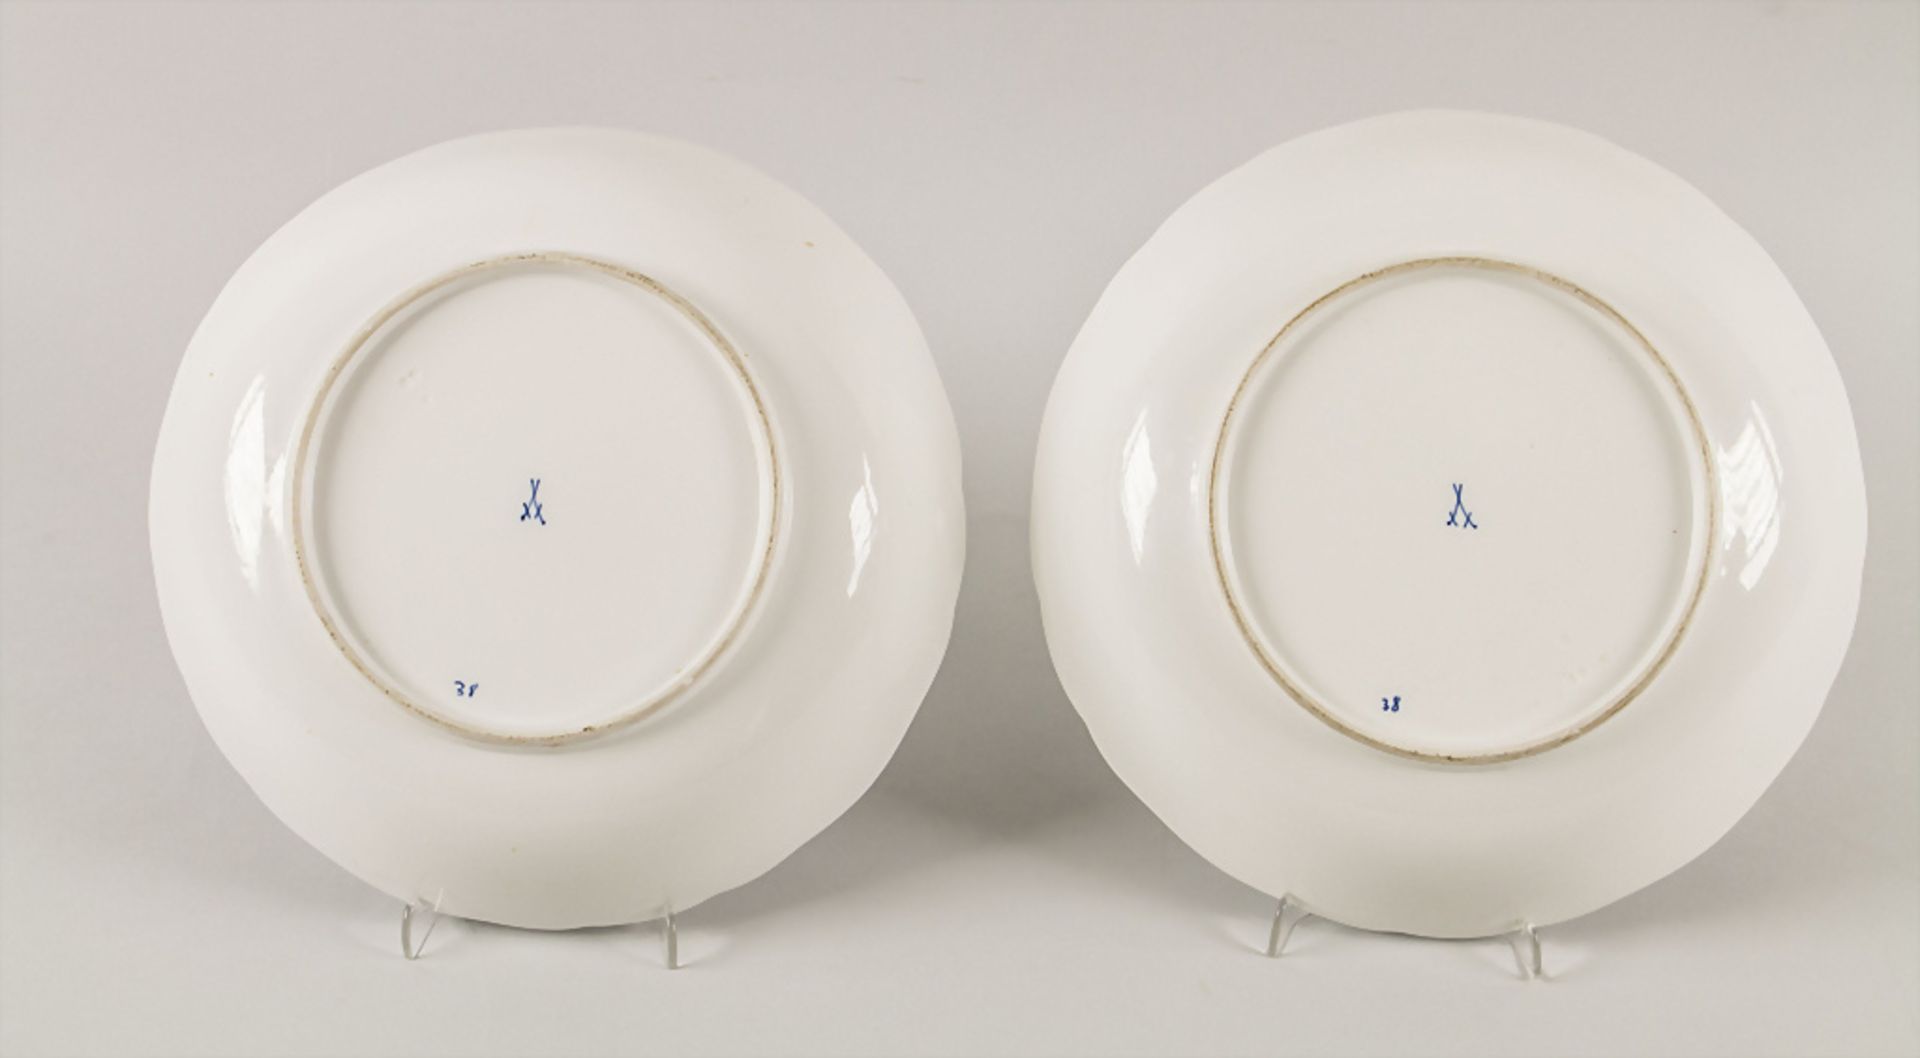 Paar Zwiebelmuster Gemüseschalen / A pair of serving bowls with onion pattern, Meissen, 2. ... - Image 3 of 4